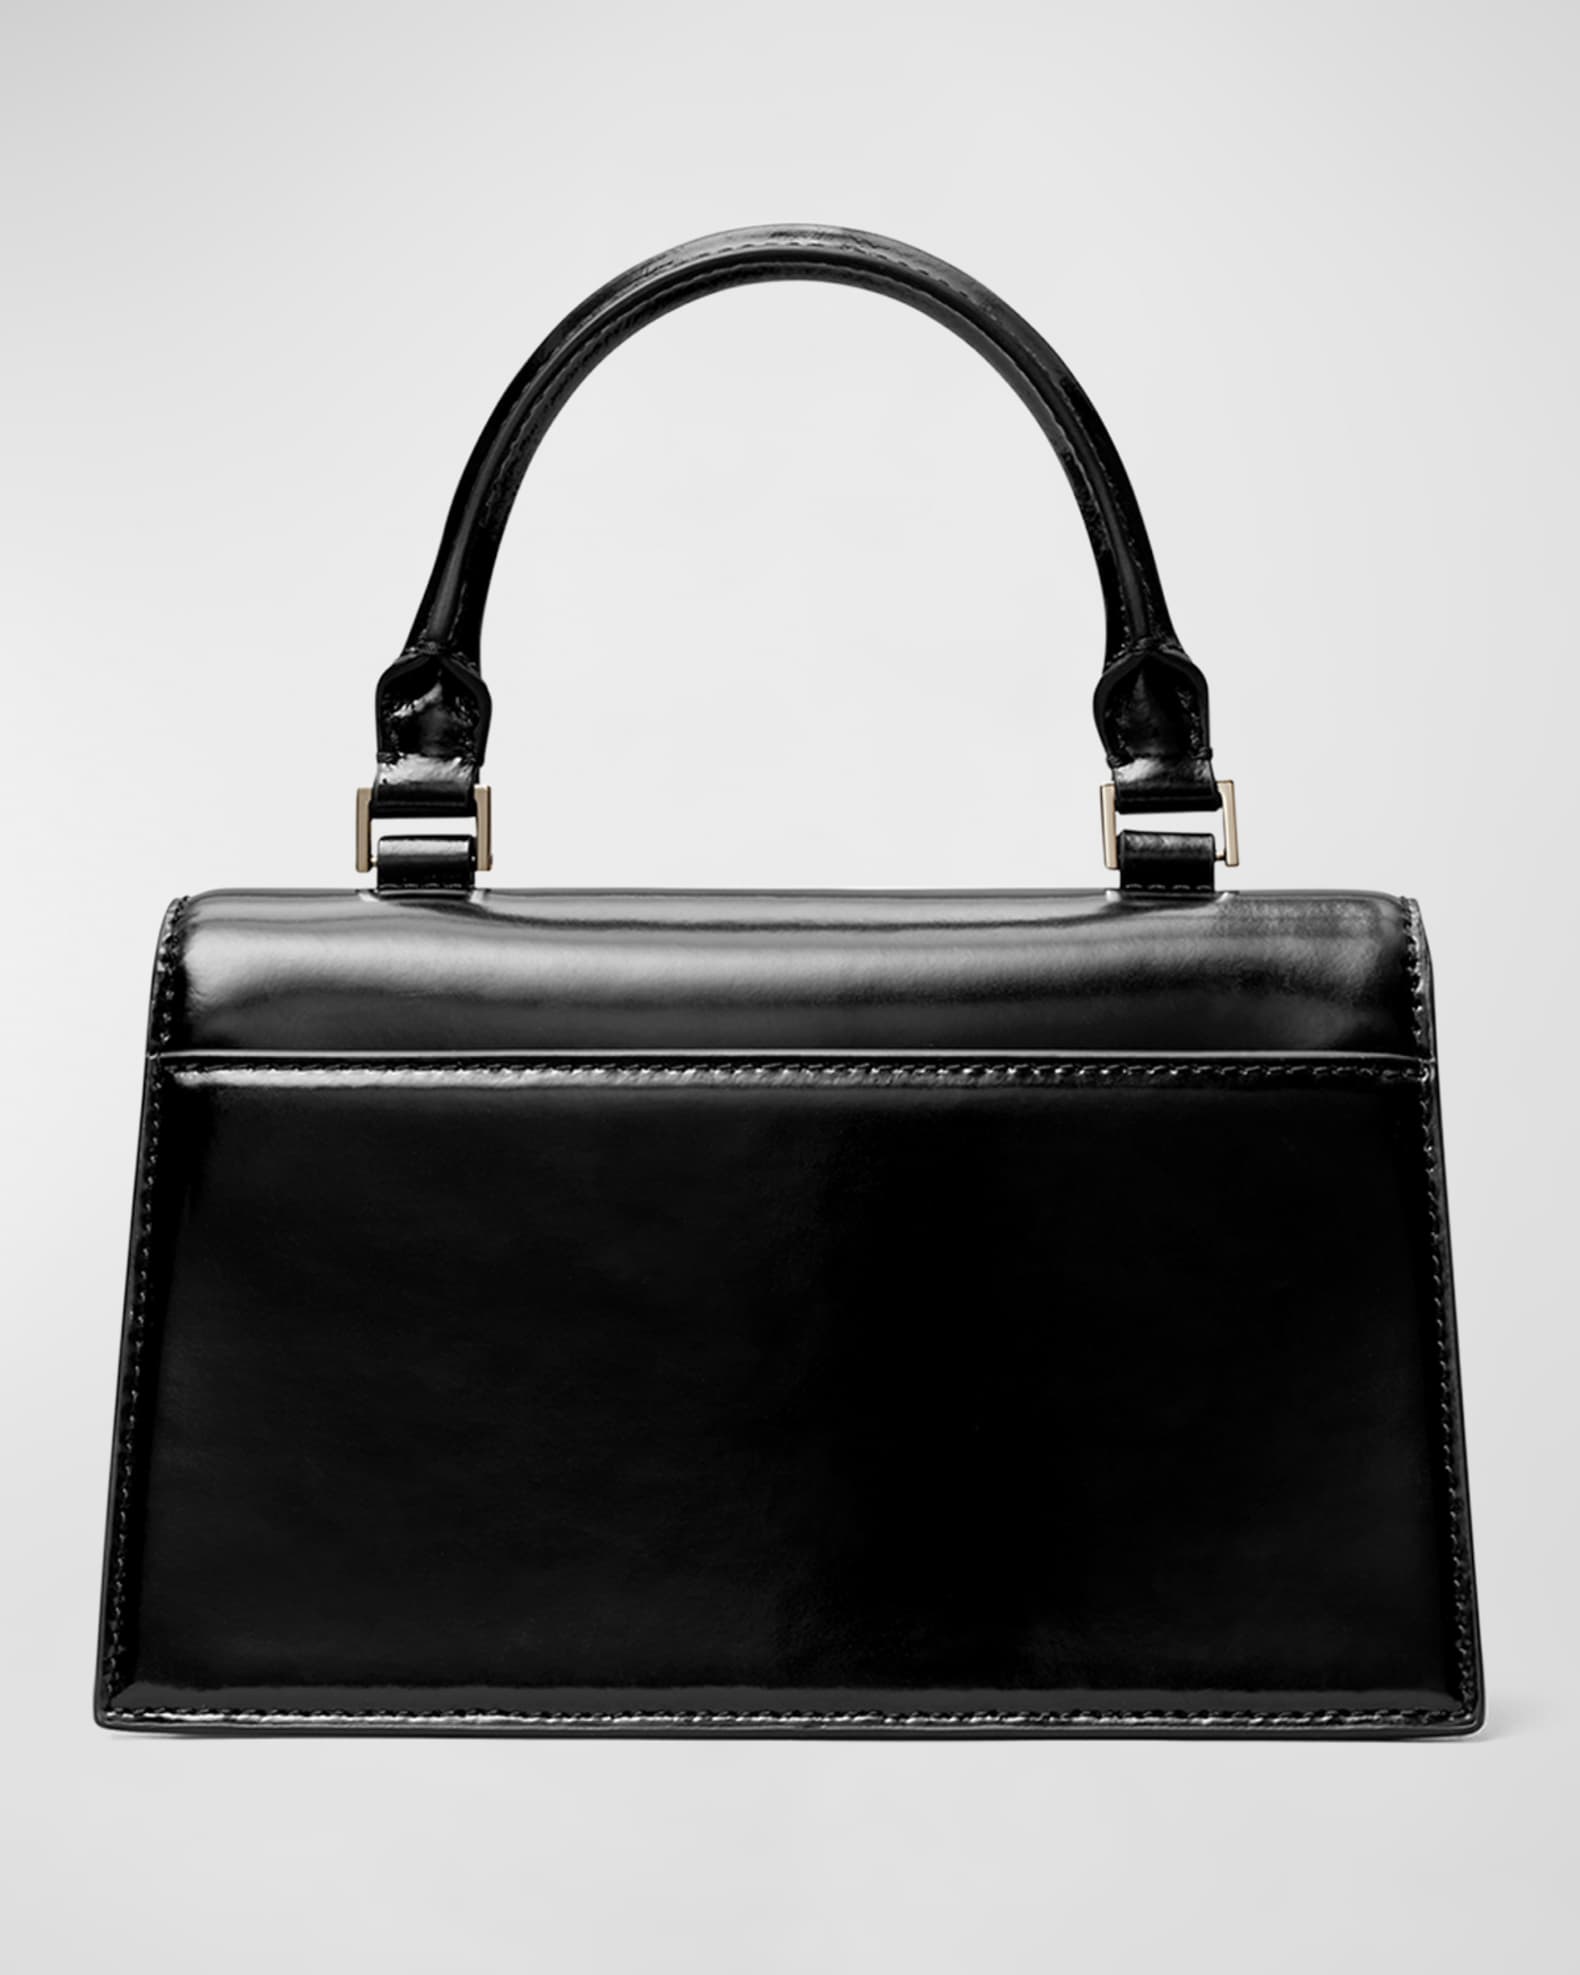 Shiny Patent Faux Leather Handbags Barrel Top Handle Purse Satchel